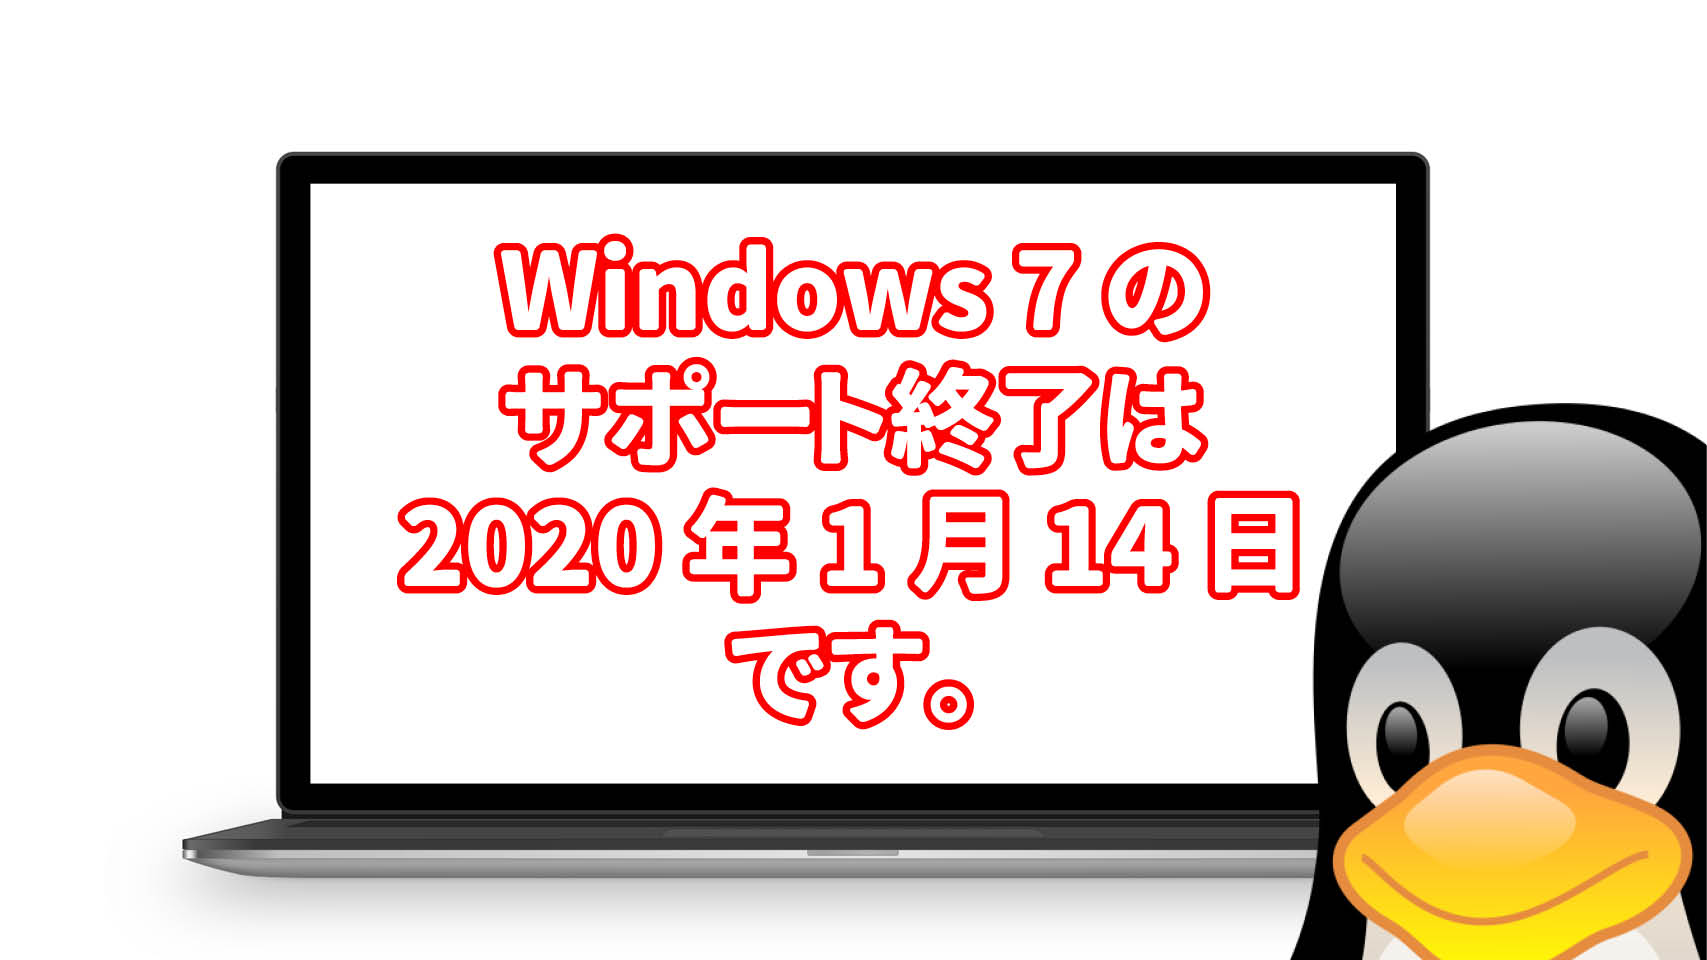 Windows 7 のサポート終了は 2020年1月14日です。